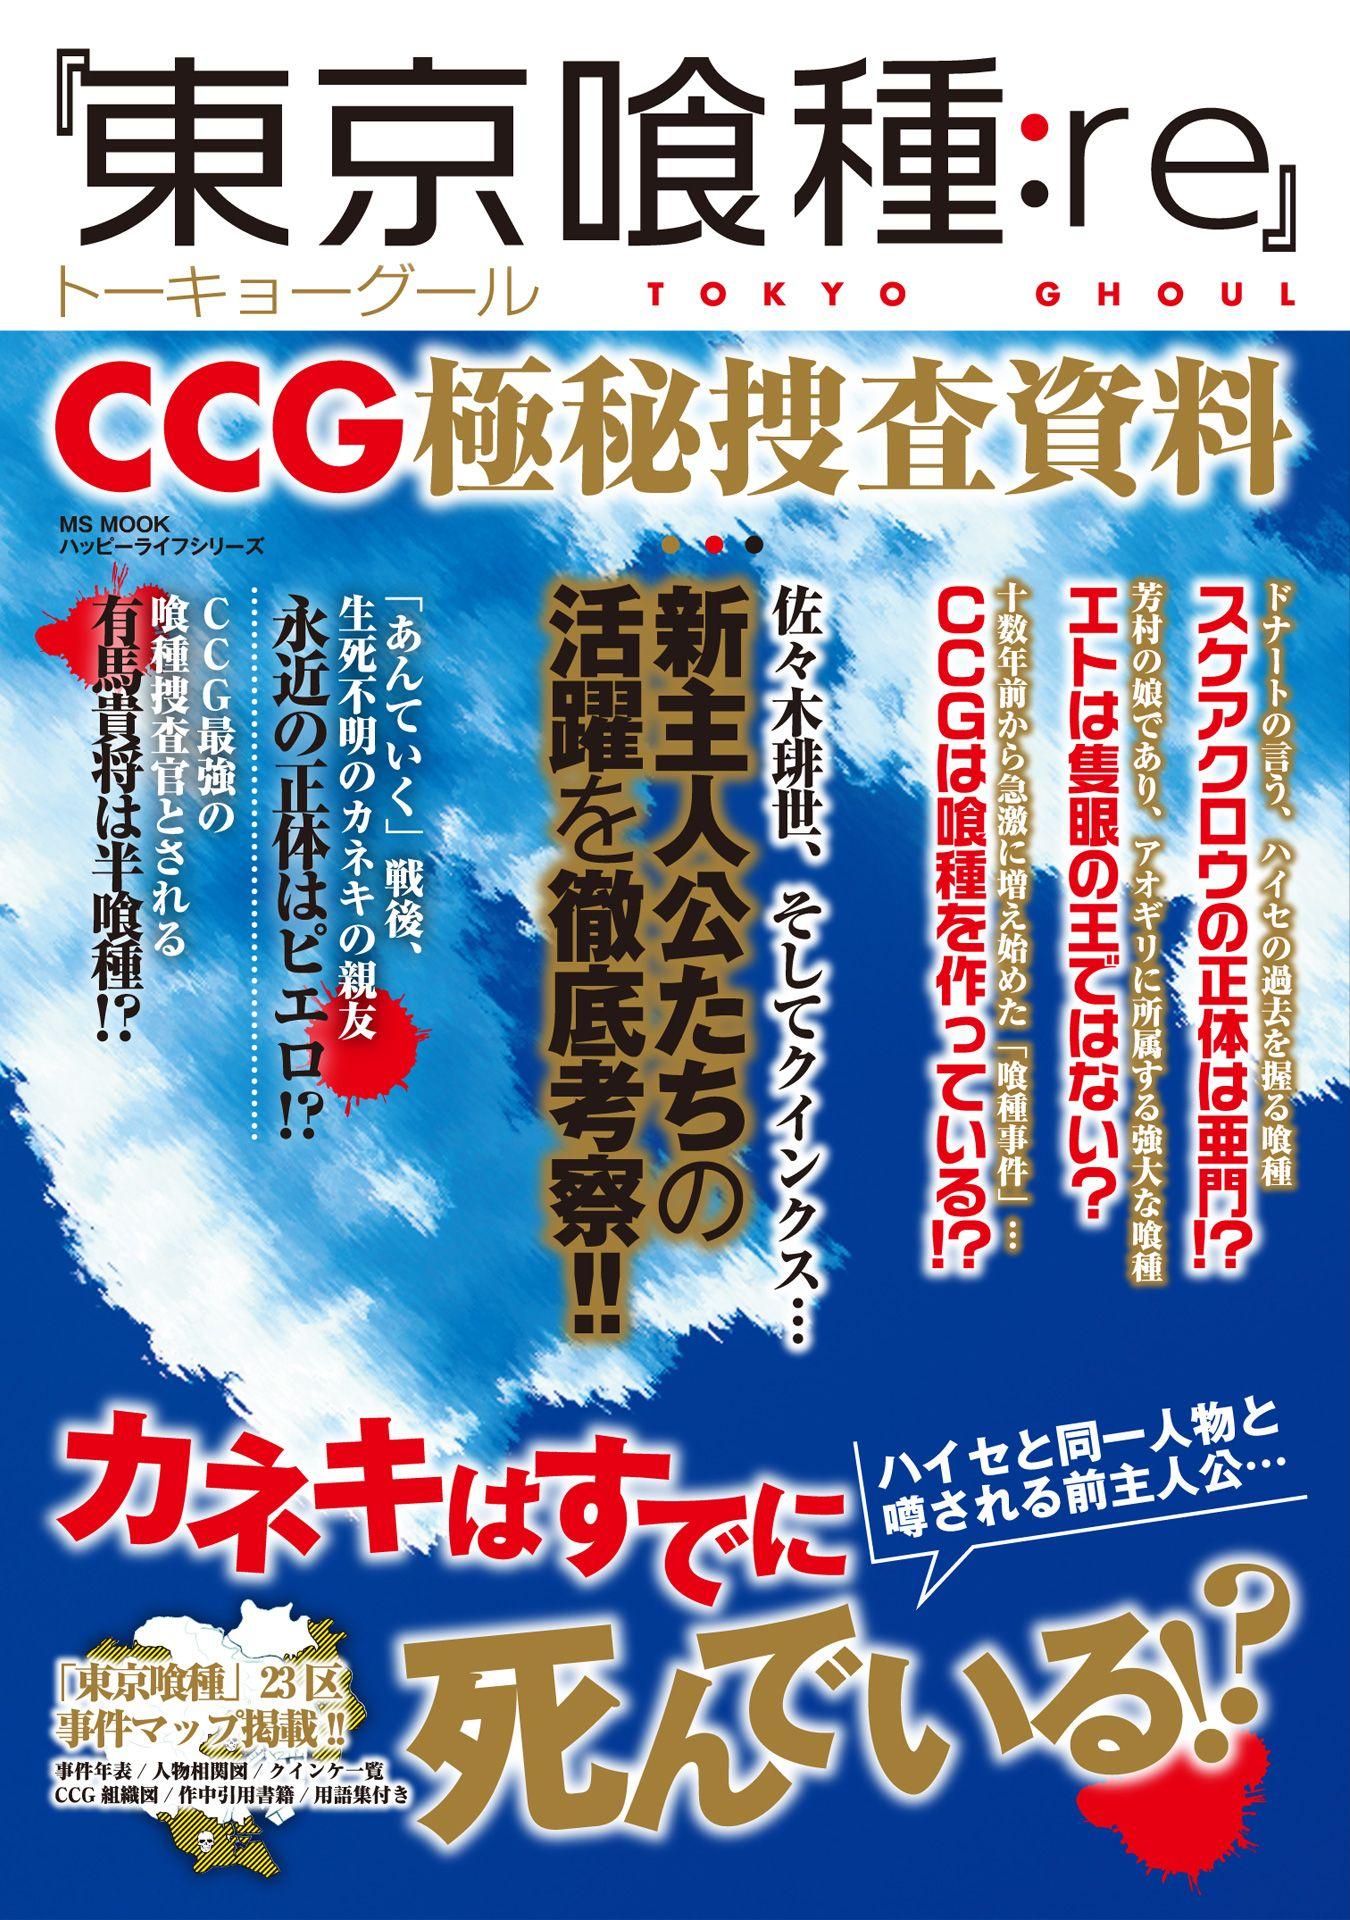 『東京喰種:Re』CCG極秘捜査資料